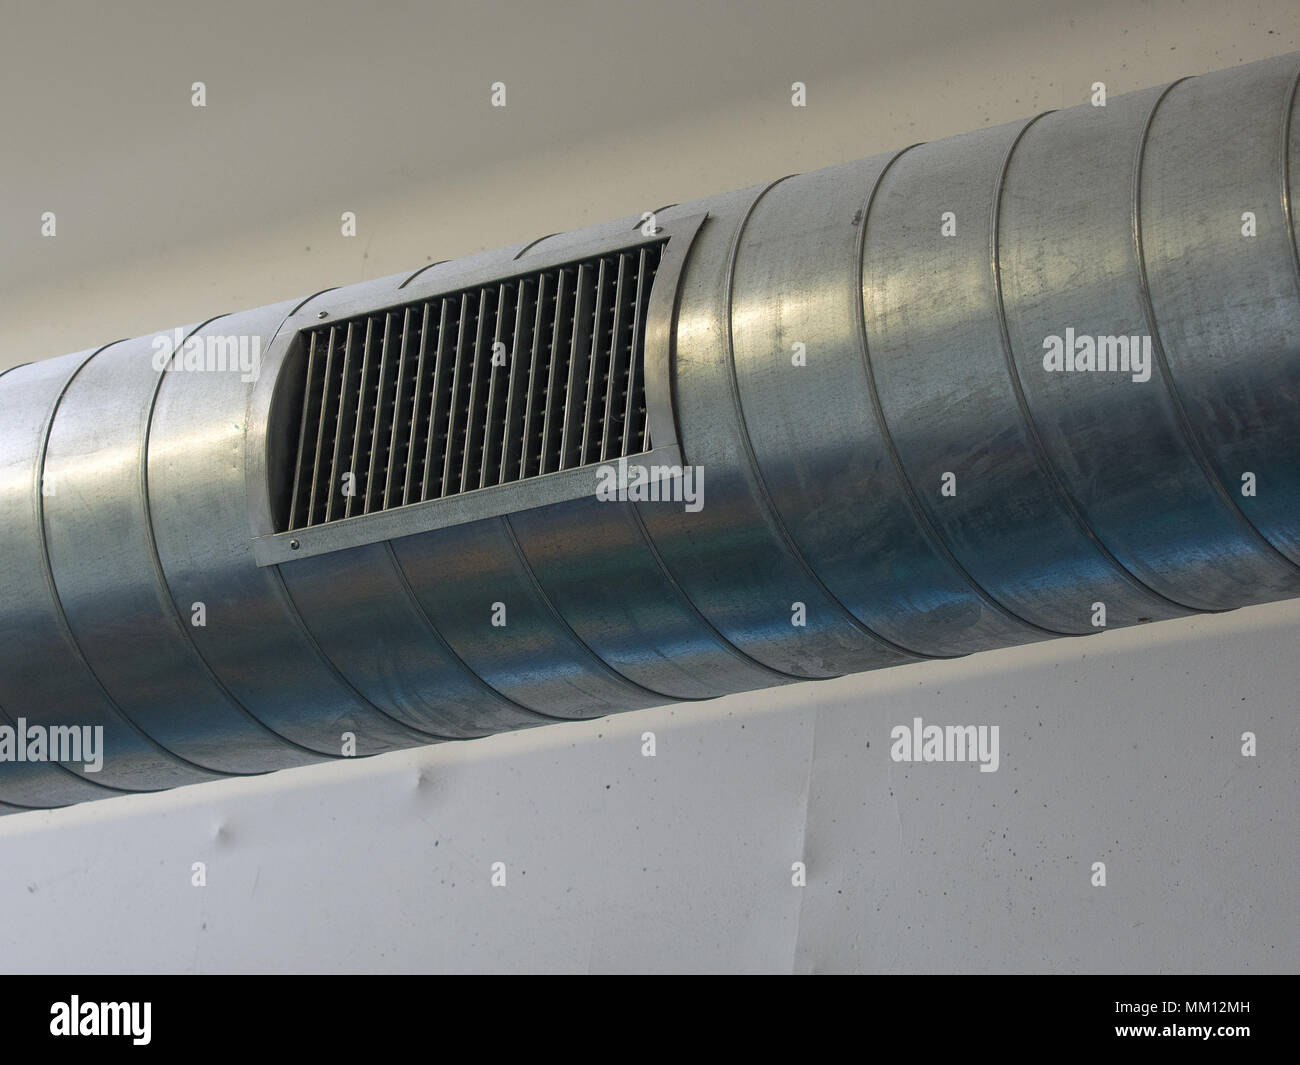 Metall Pipeline und Düse Teil einer Klimaanlage in einem grossen Gebäude  Stockfotografie - Alamy